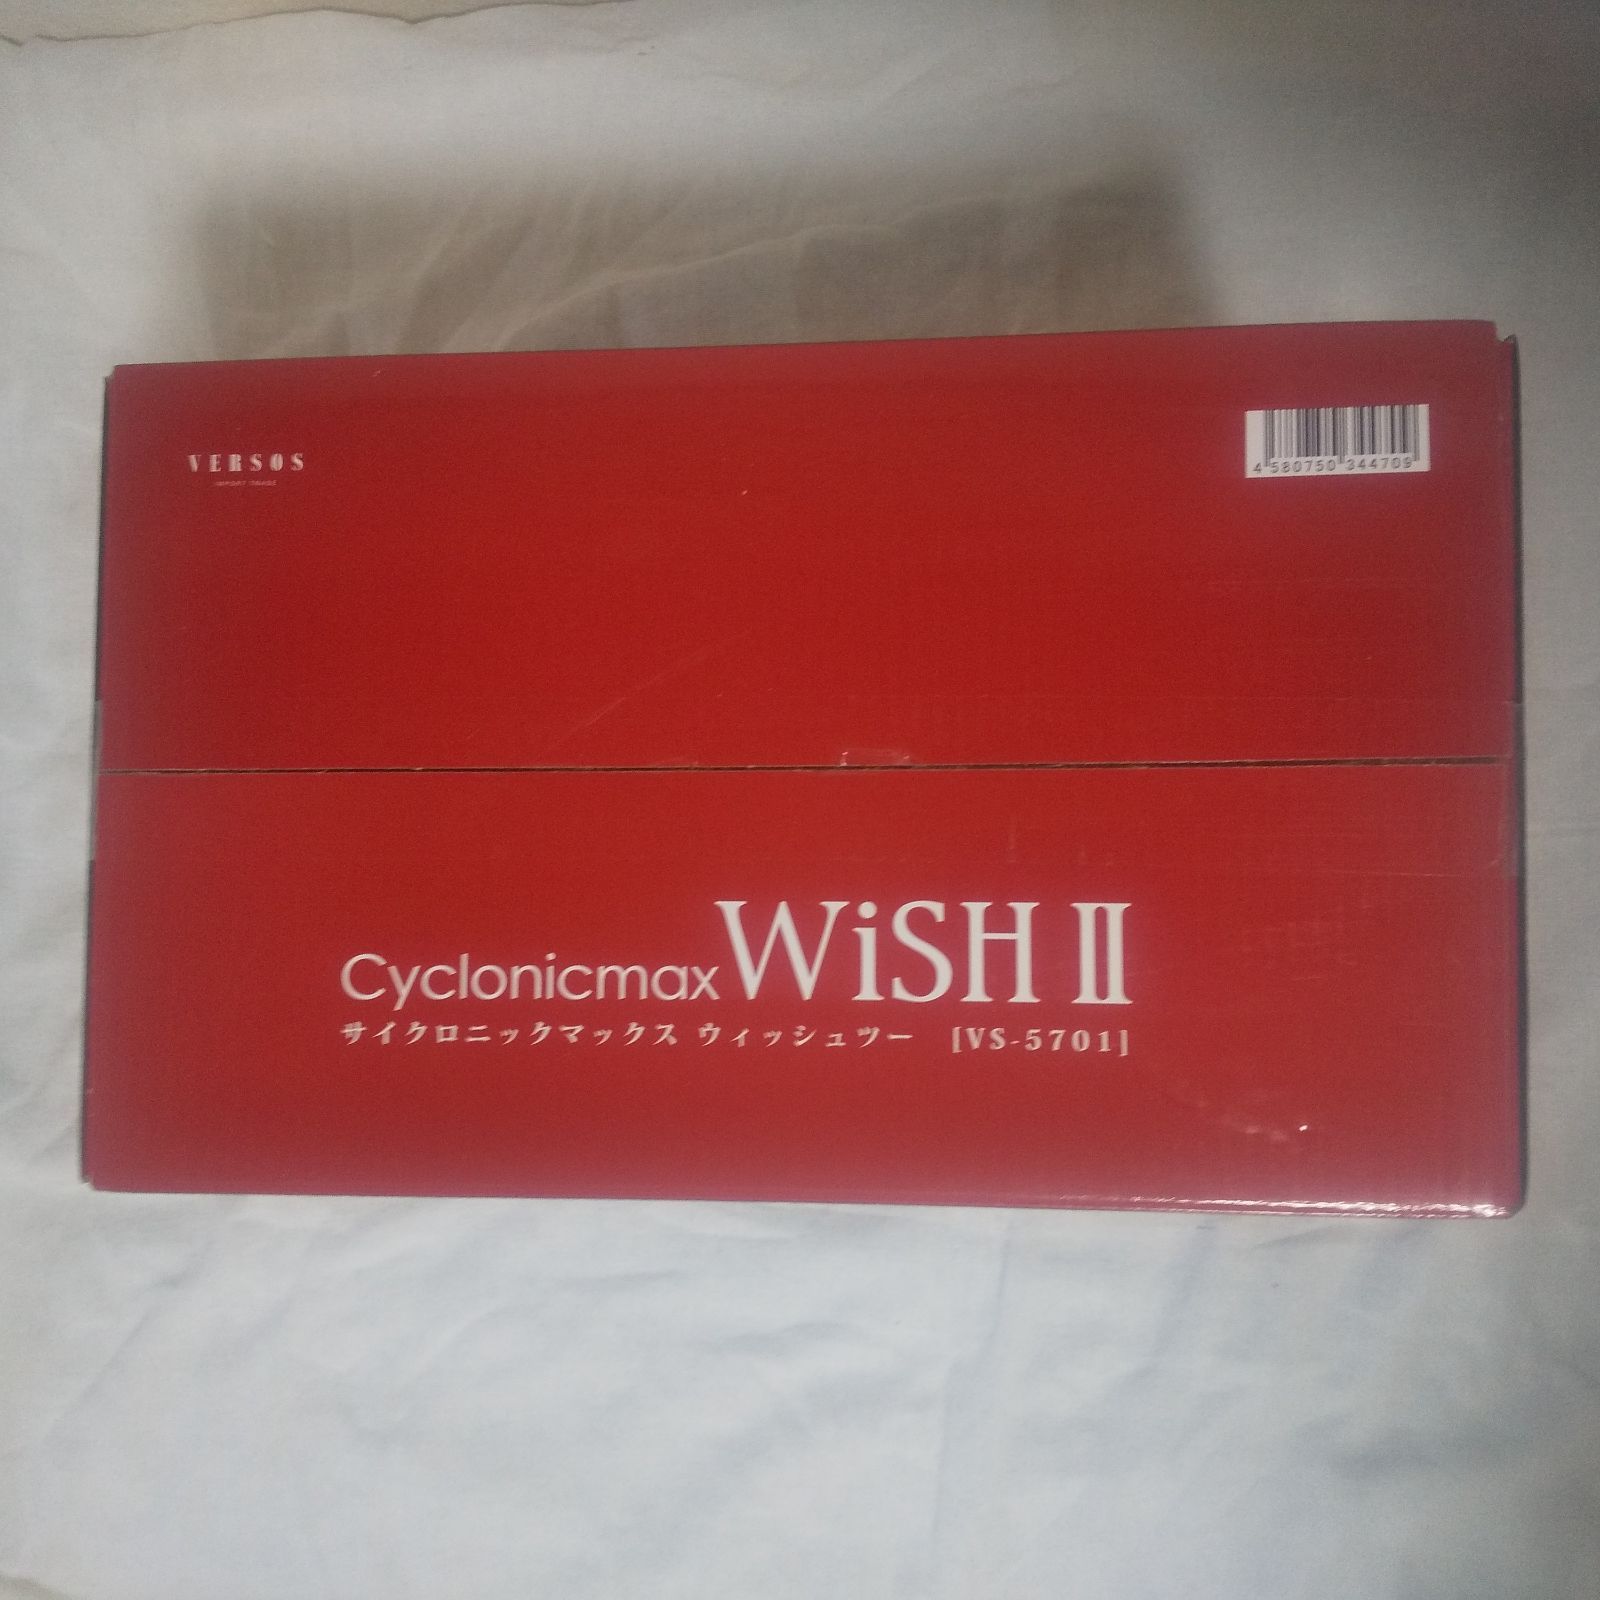 ベルソス Cyclonicmax WiSH II ( サイクロニックマックス ウィッシュ 